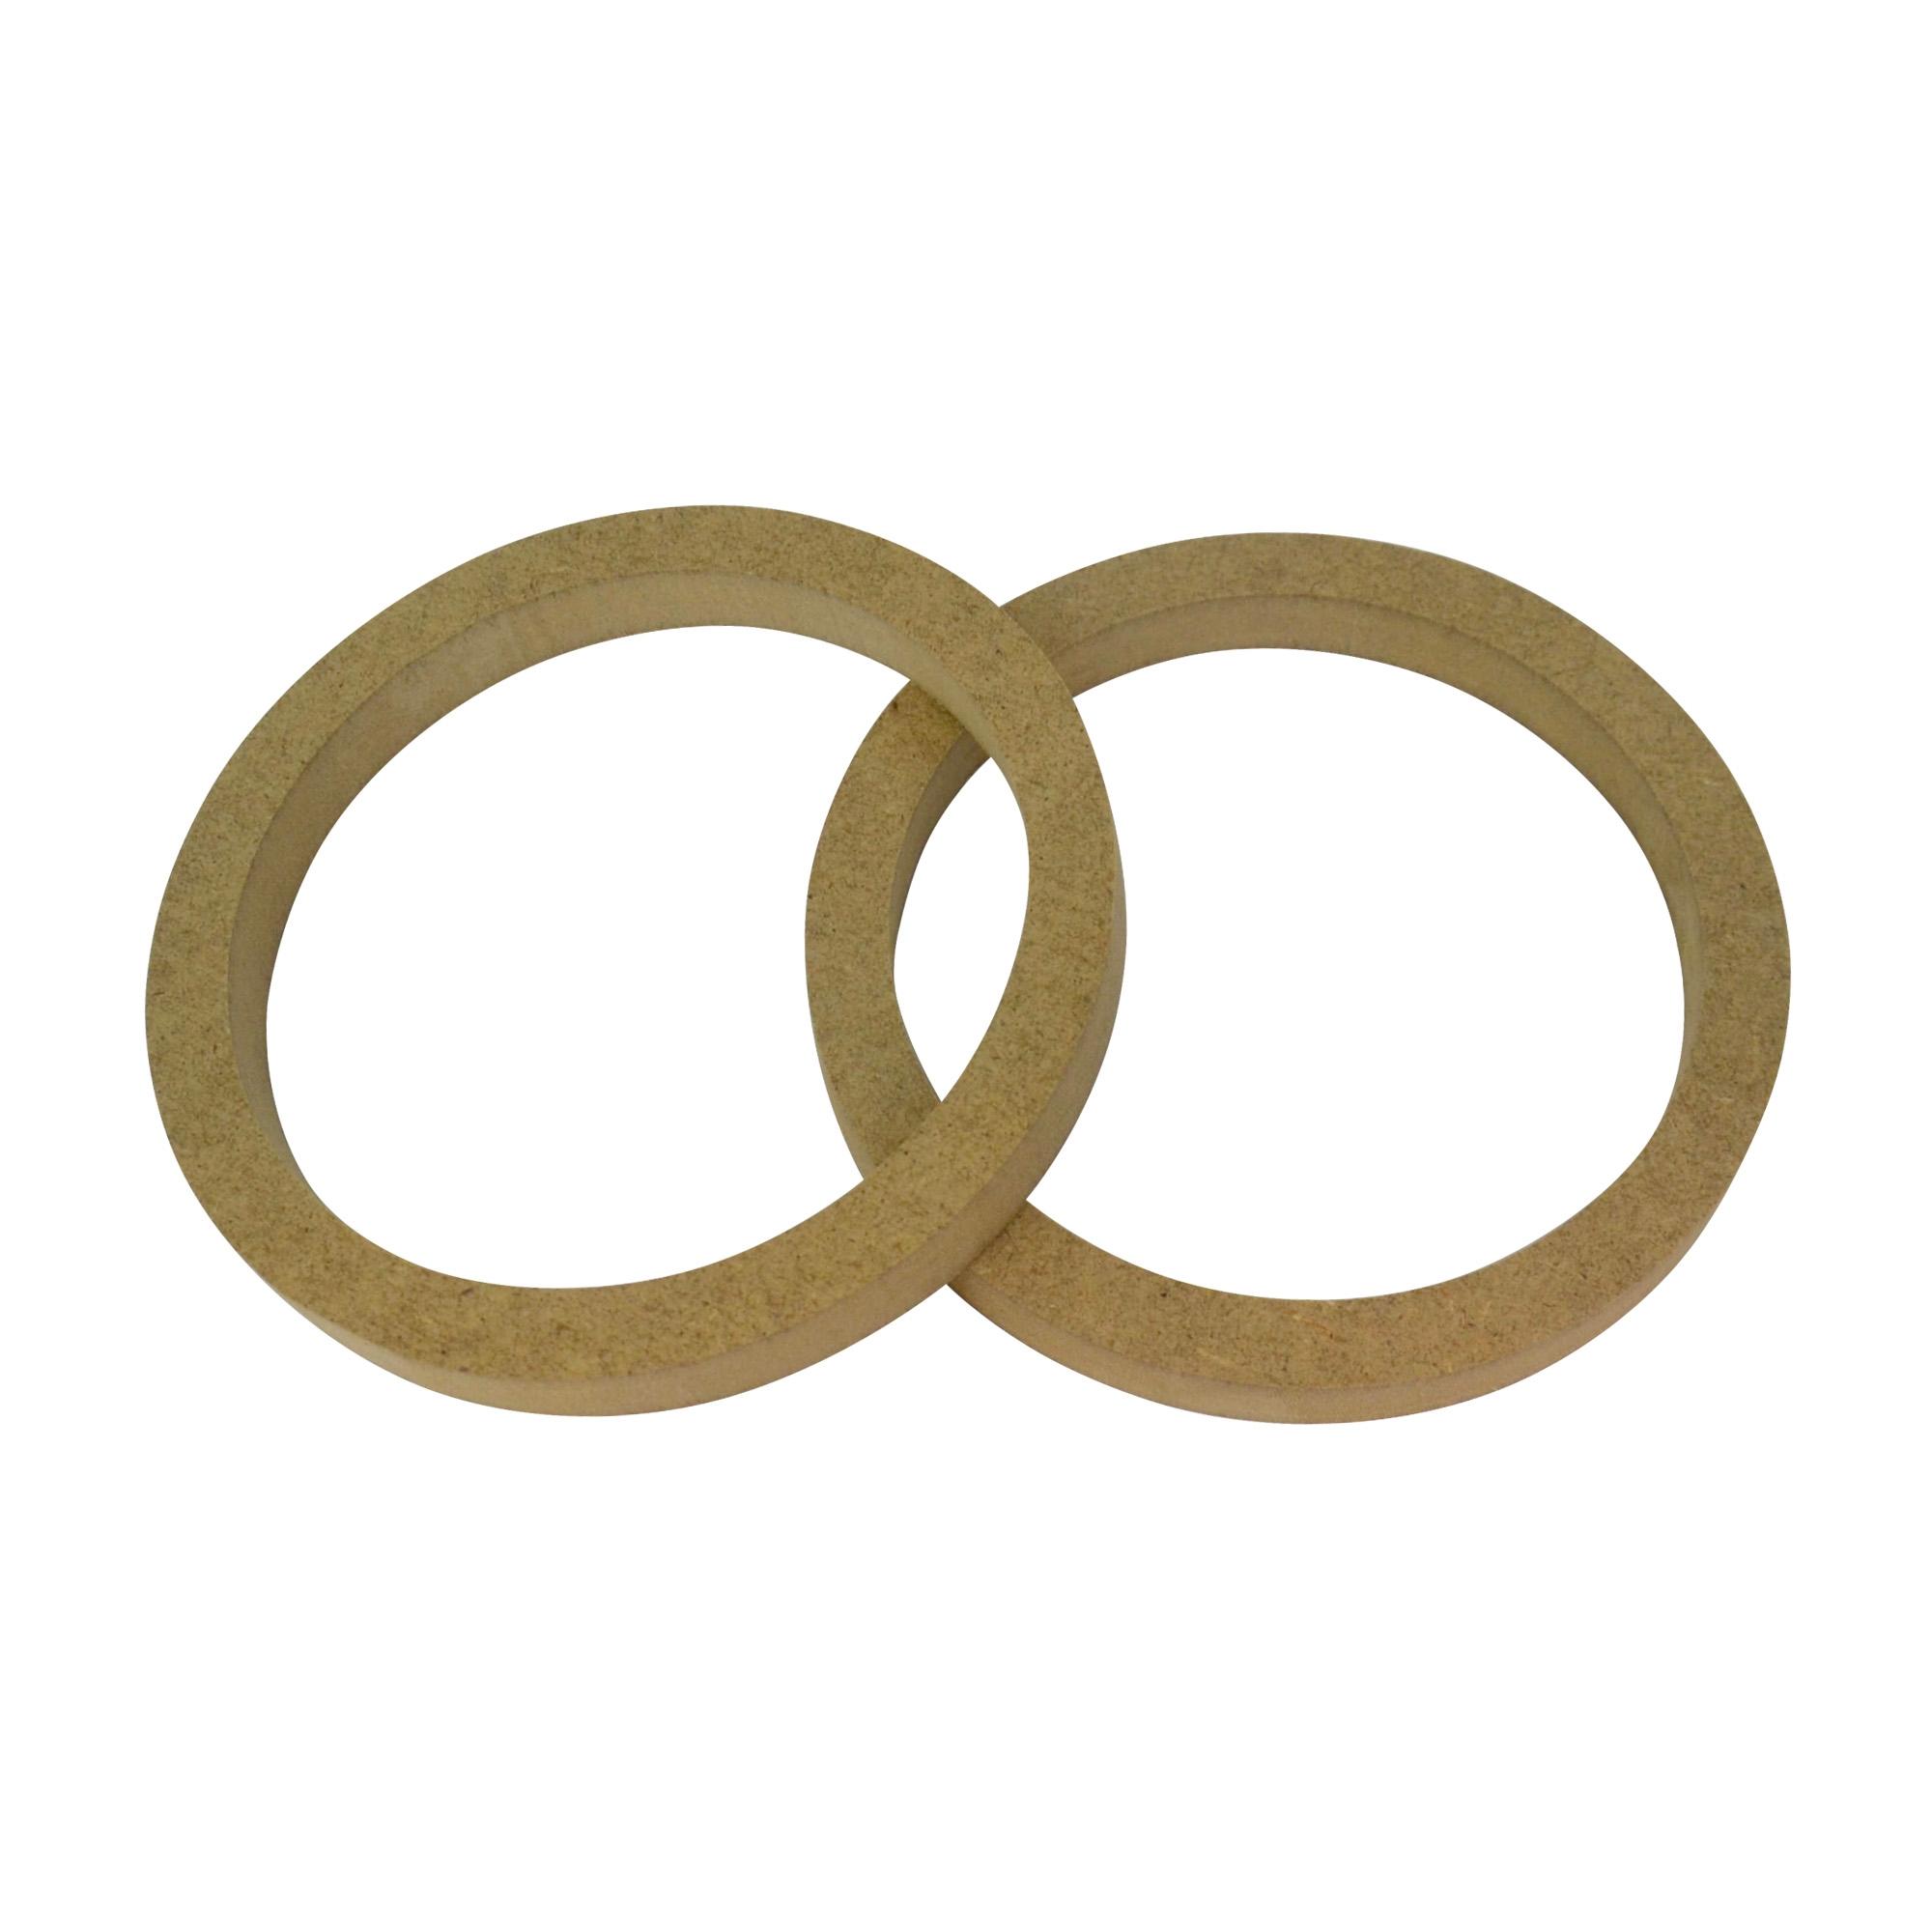 Кольцо переходное универсальное Вега 13 см (М16.13-1)